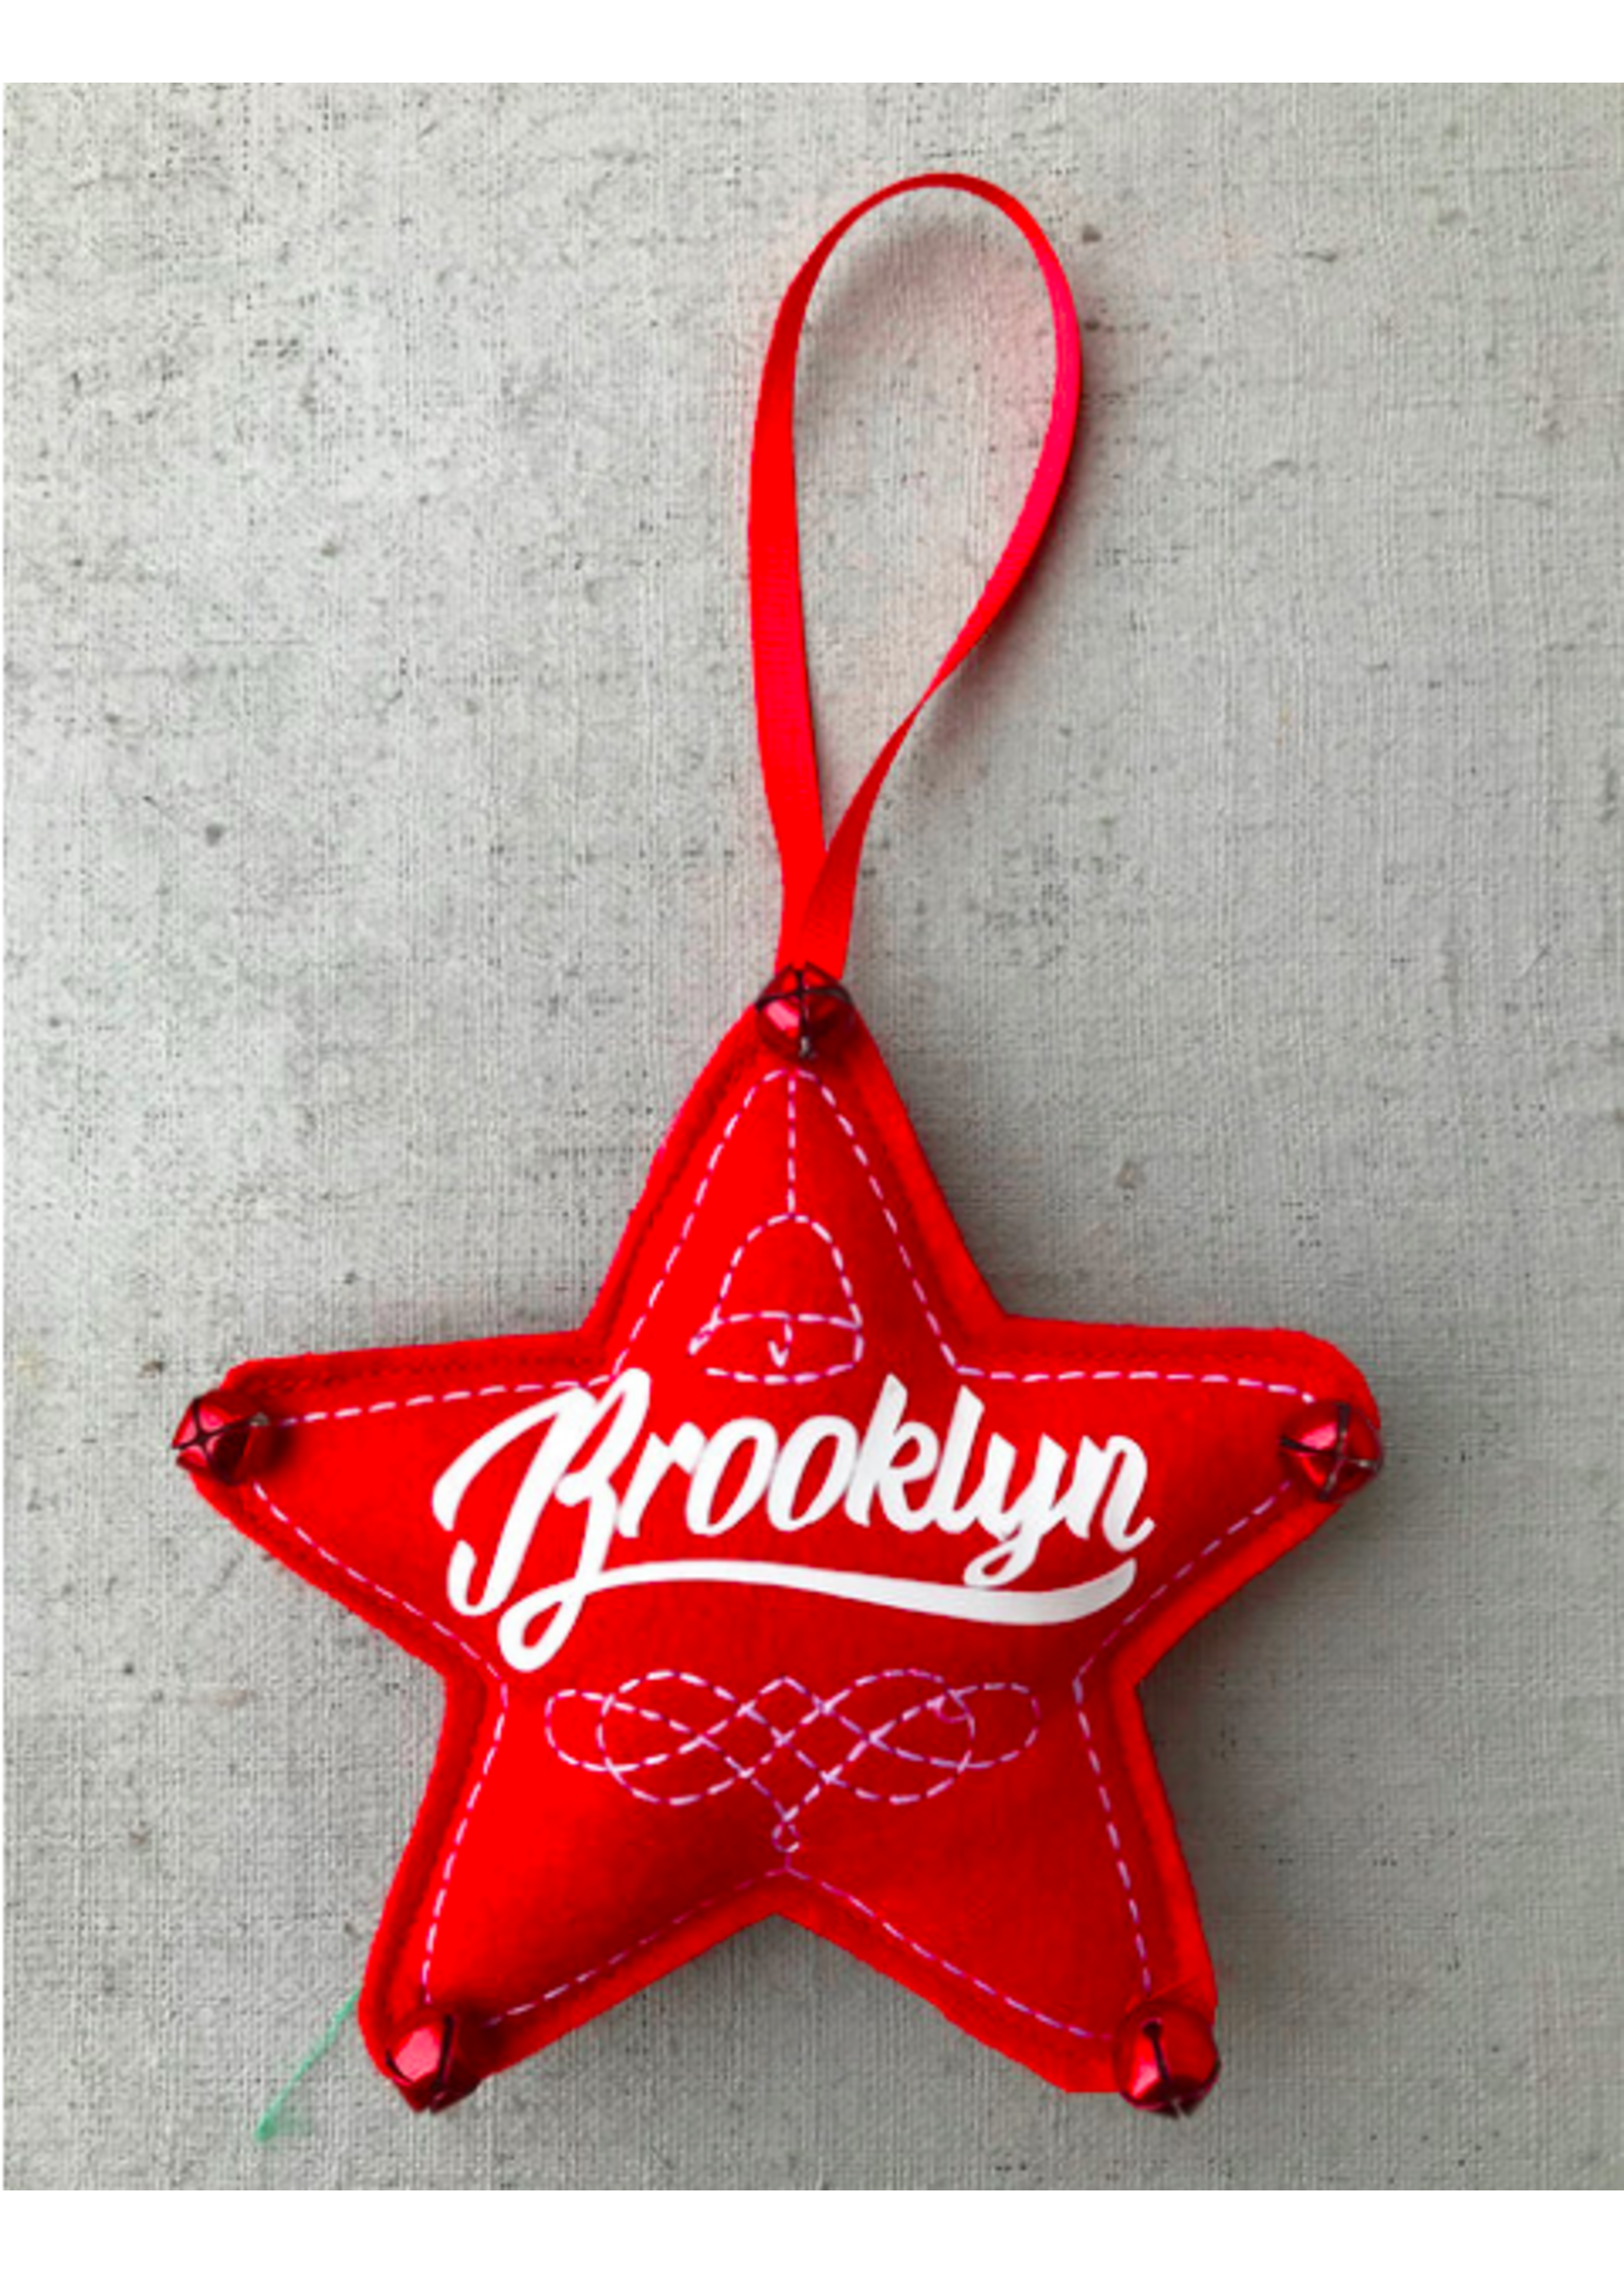 Brooklyn Star Ornament Red Script